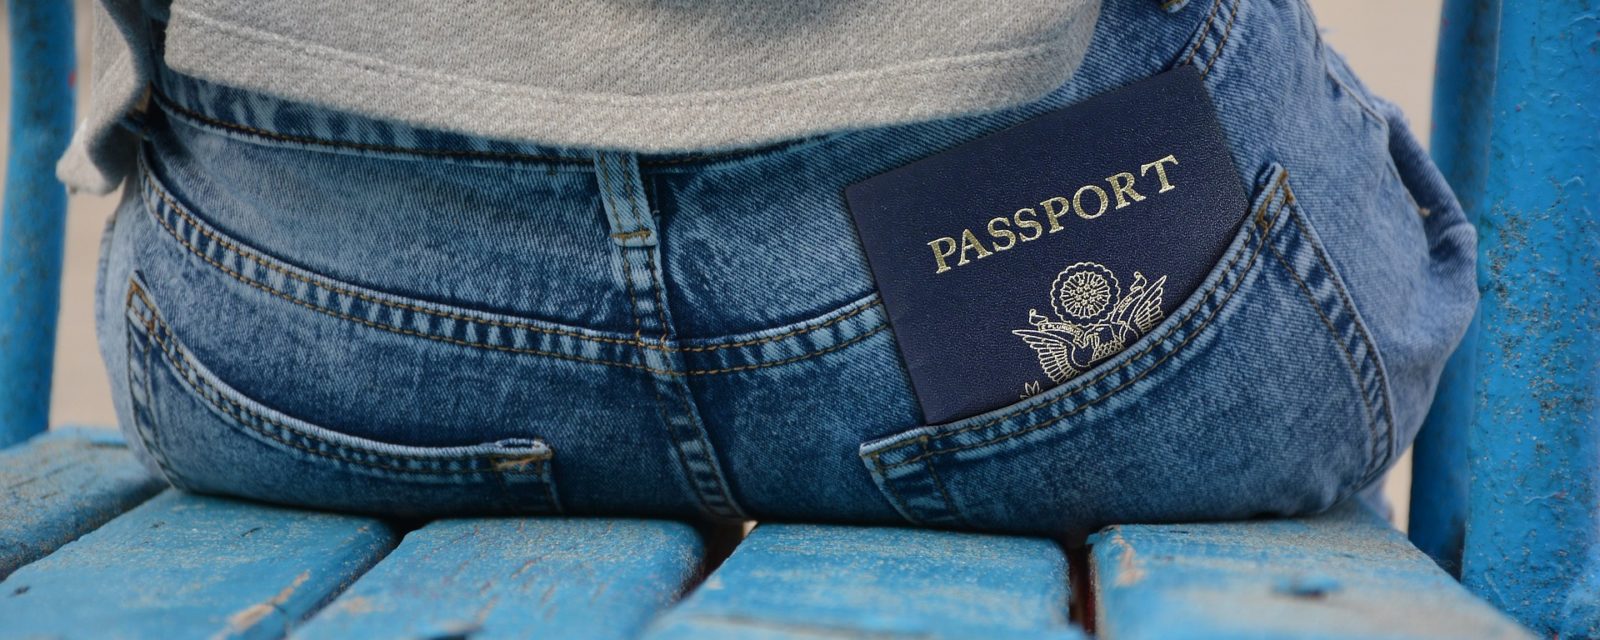 visa_passport_stage_etranger